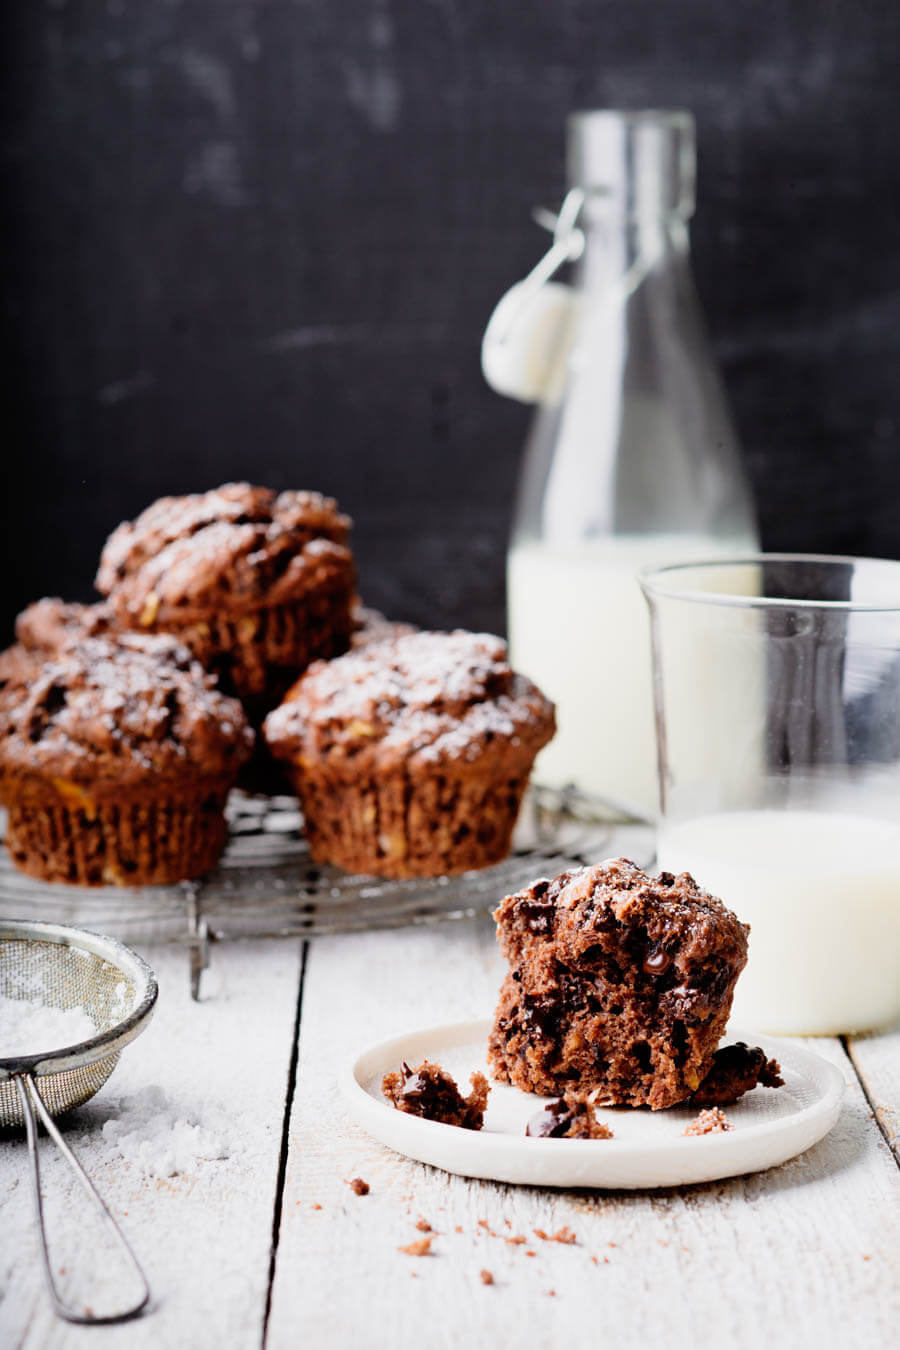 Schokoladen-Muffin, auf Gitter mit Milchflasche